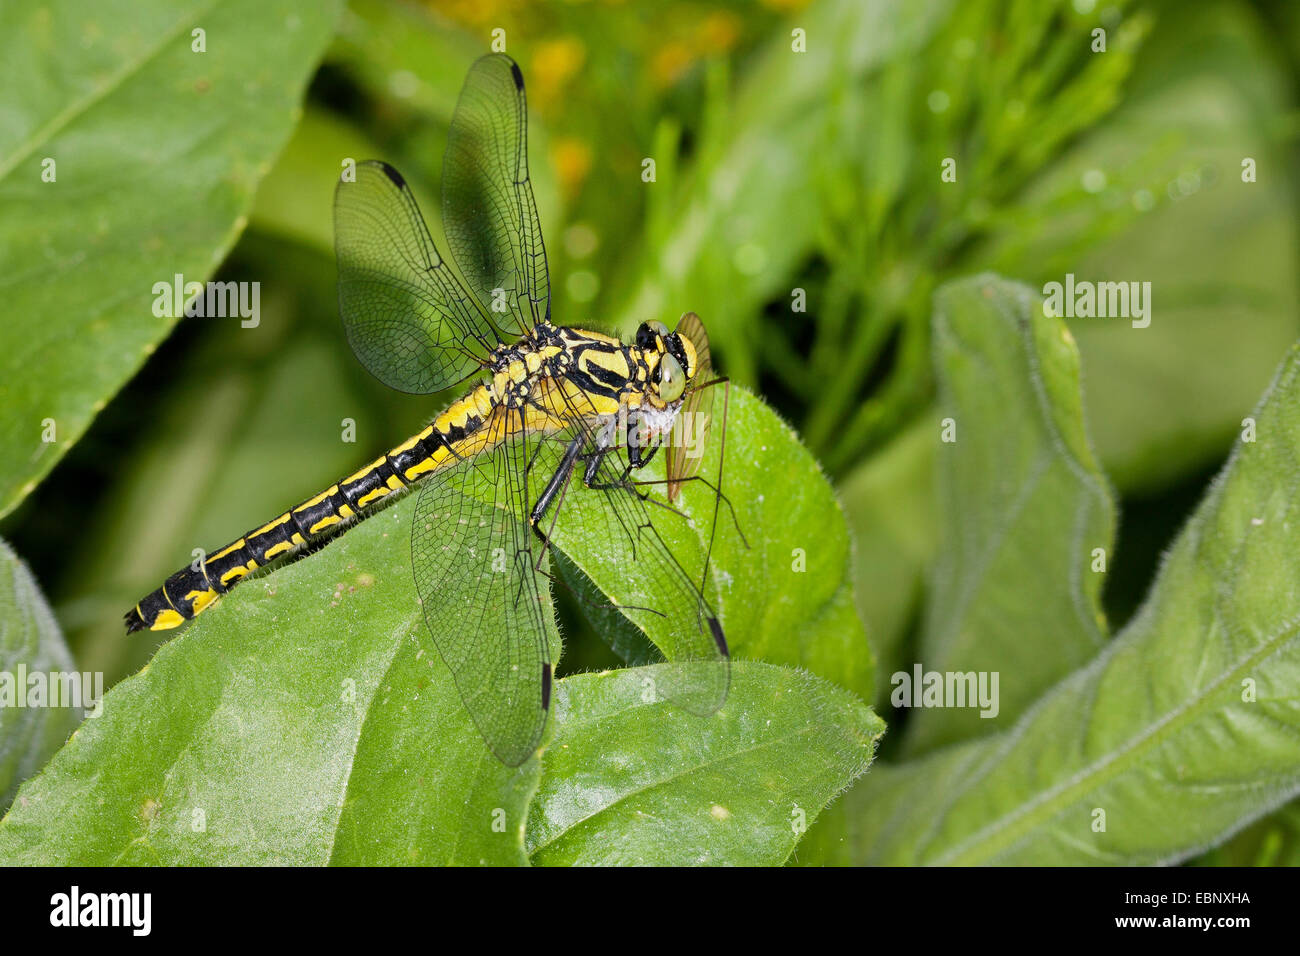 Club-tailed dragonfly (Gomphus vulgatissimus), con presas, Alemania Foto de stock